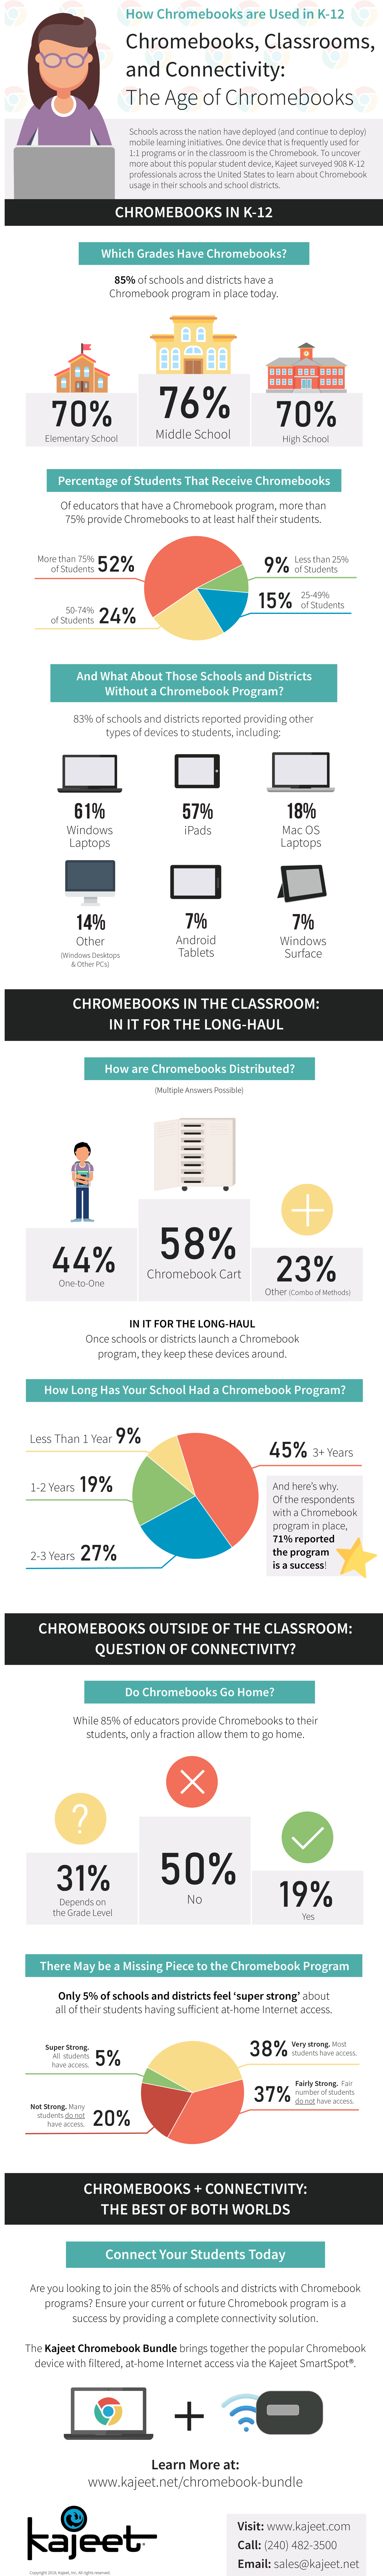 Student Account Management Chromebook-Survey Infographic Courtesy of Kajeet 2019